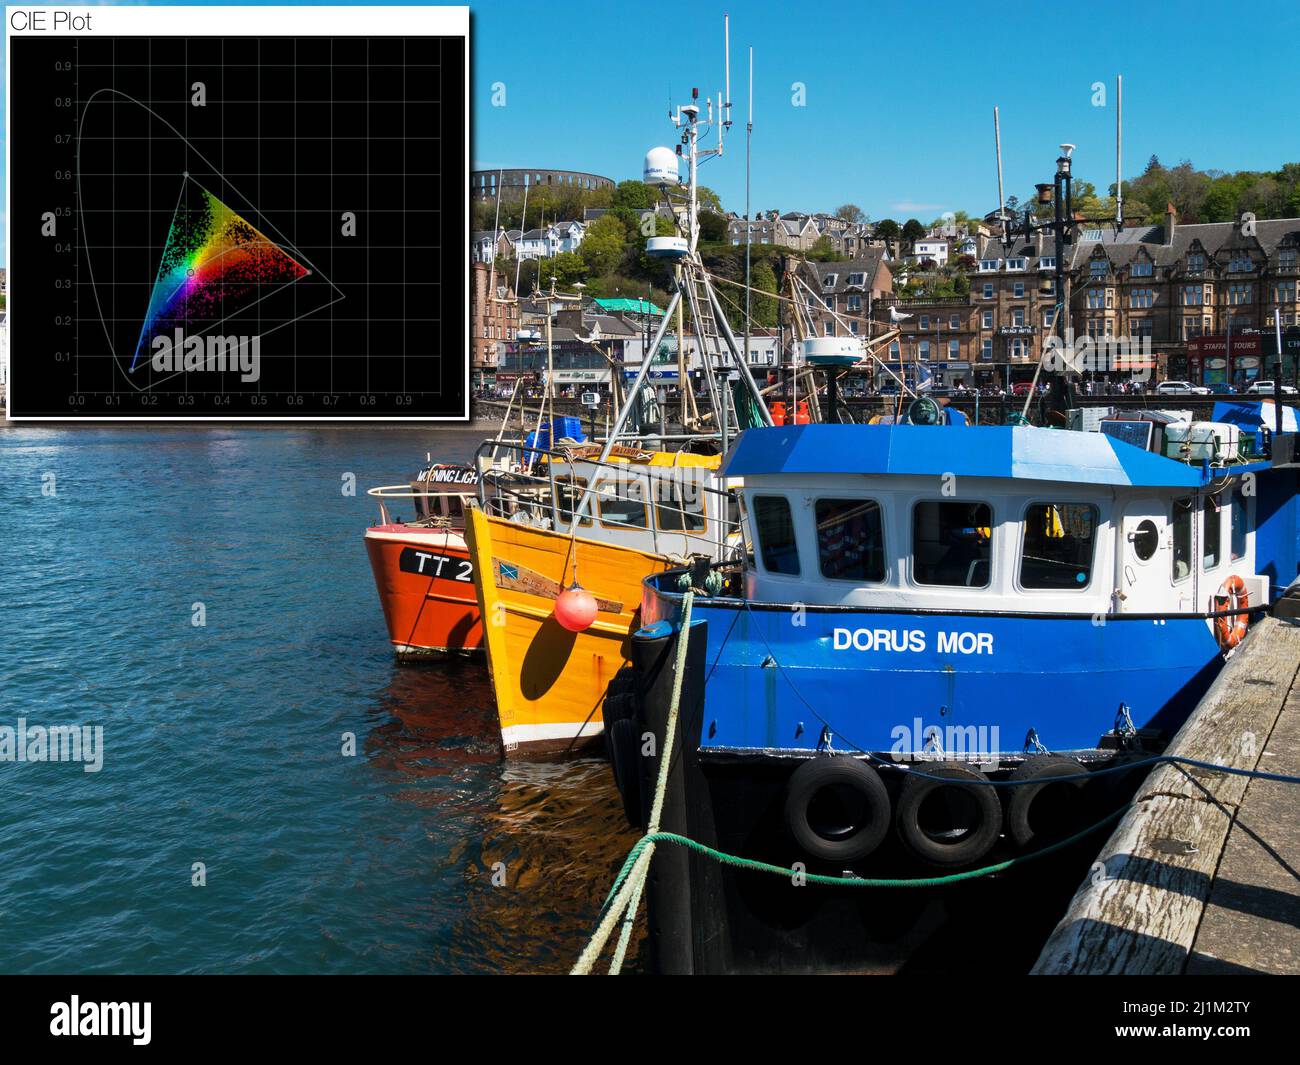 Montage mit farbenfroher Szene mit eingefärbter CIE-Plotanalyse der Farben im Bild. (Analyse mit der Software Nobe Omniscope durchgeführt). Stockfoto